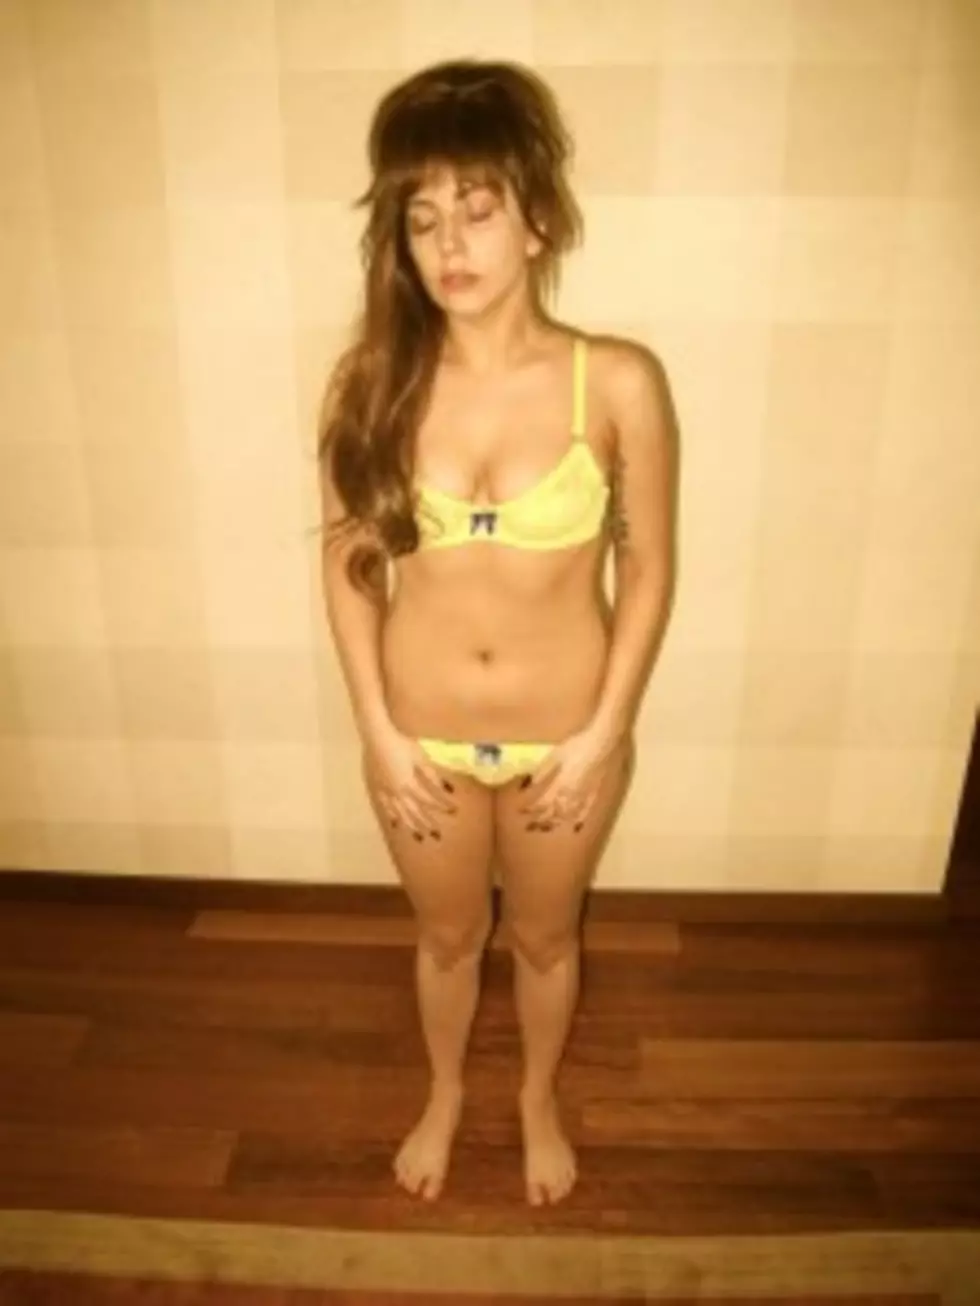 Lady Gaga Starts a Body Revolution